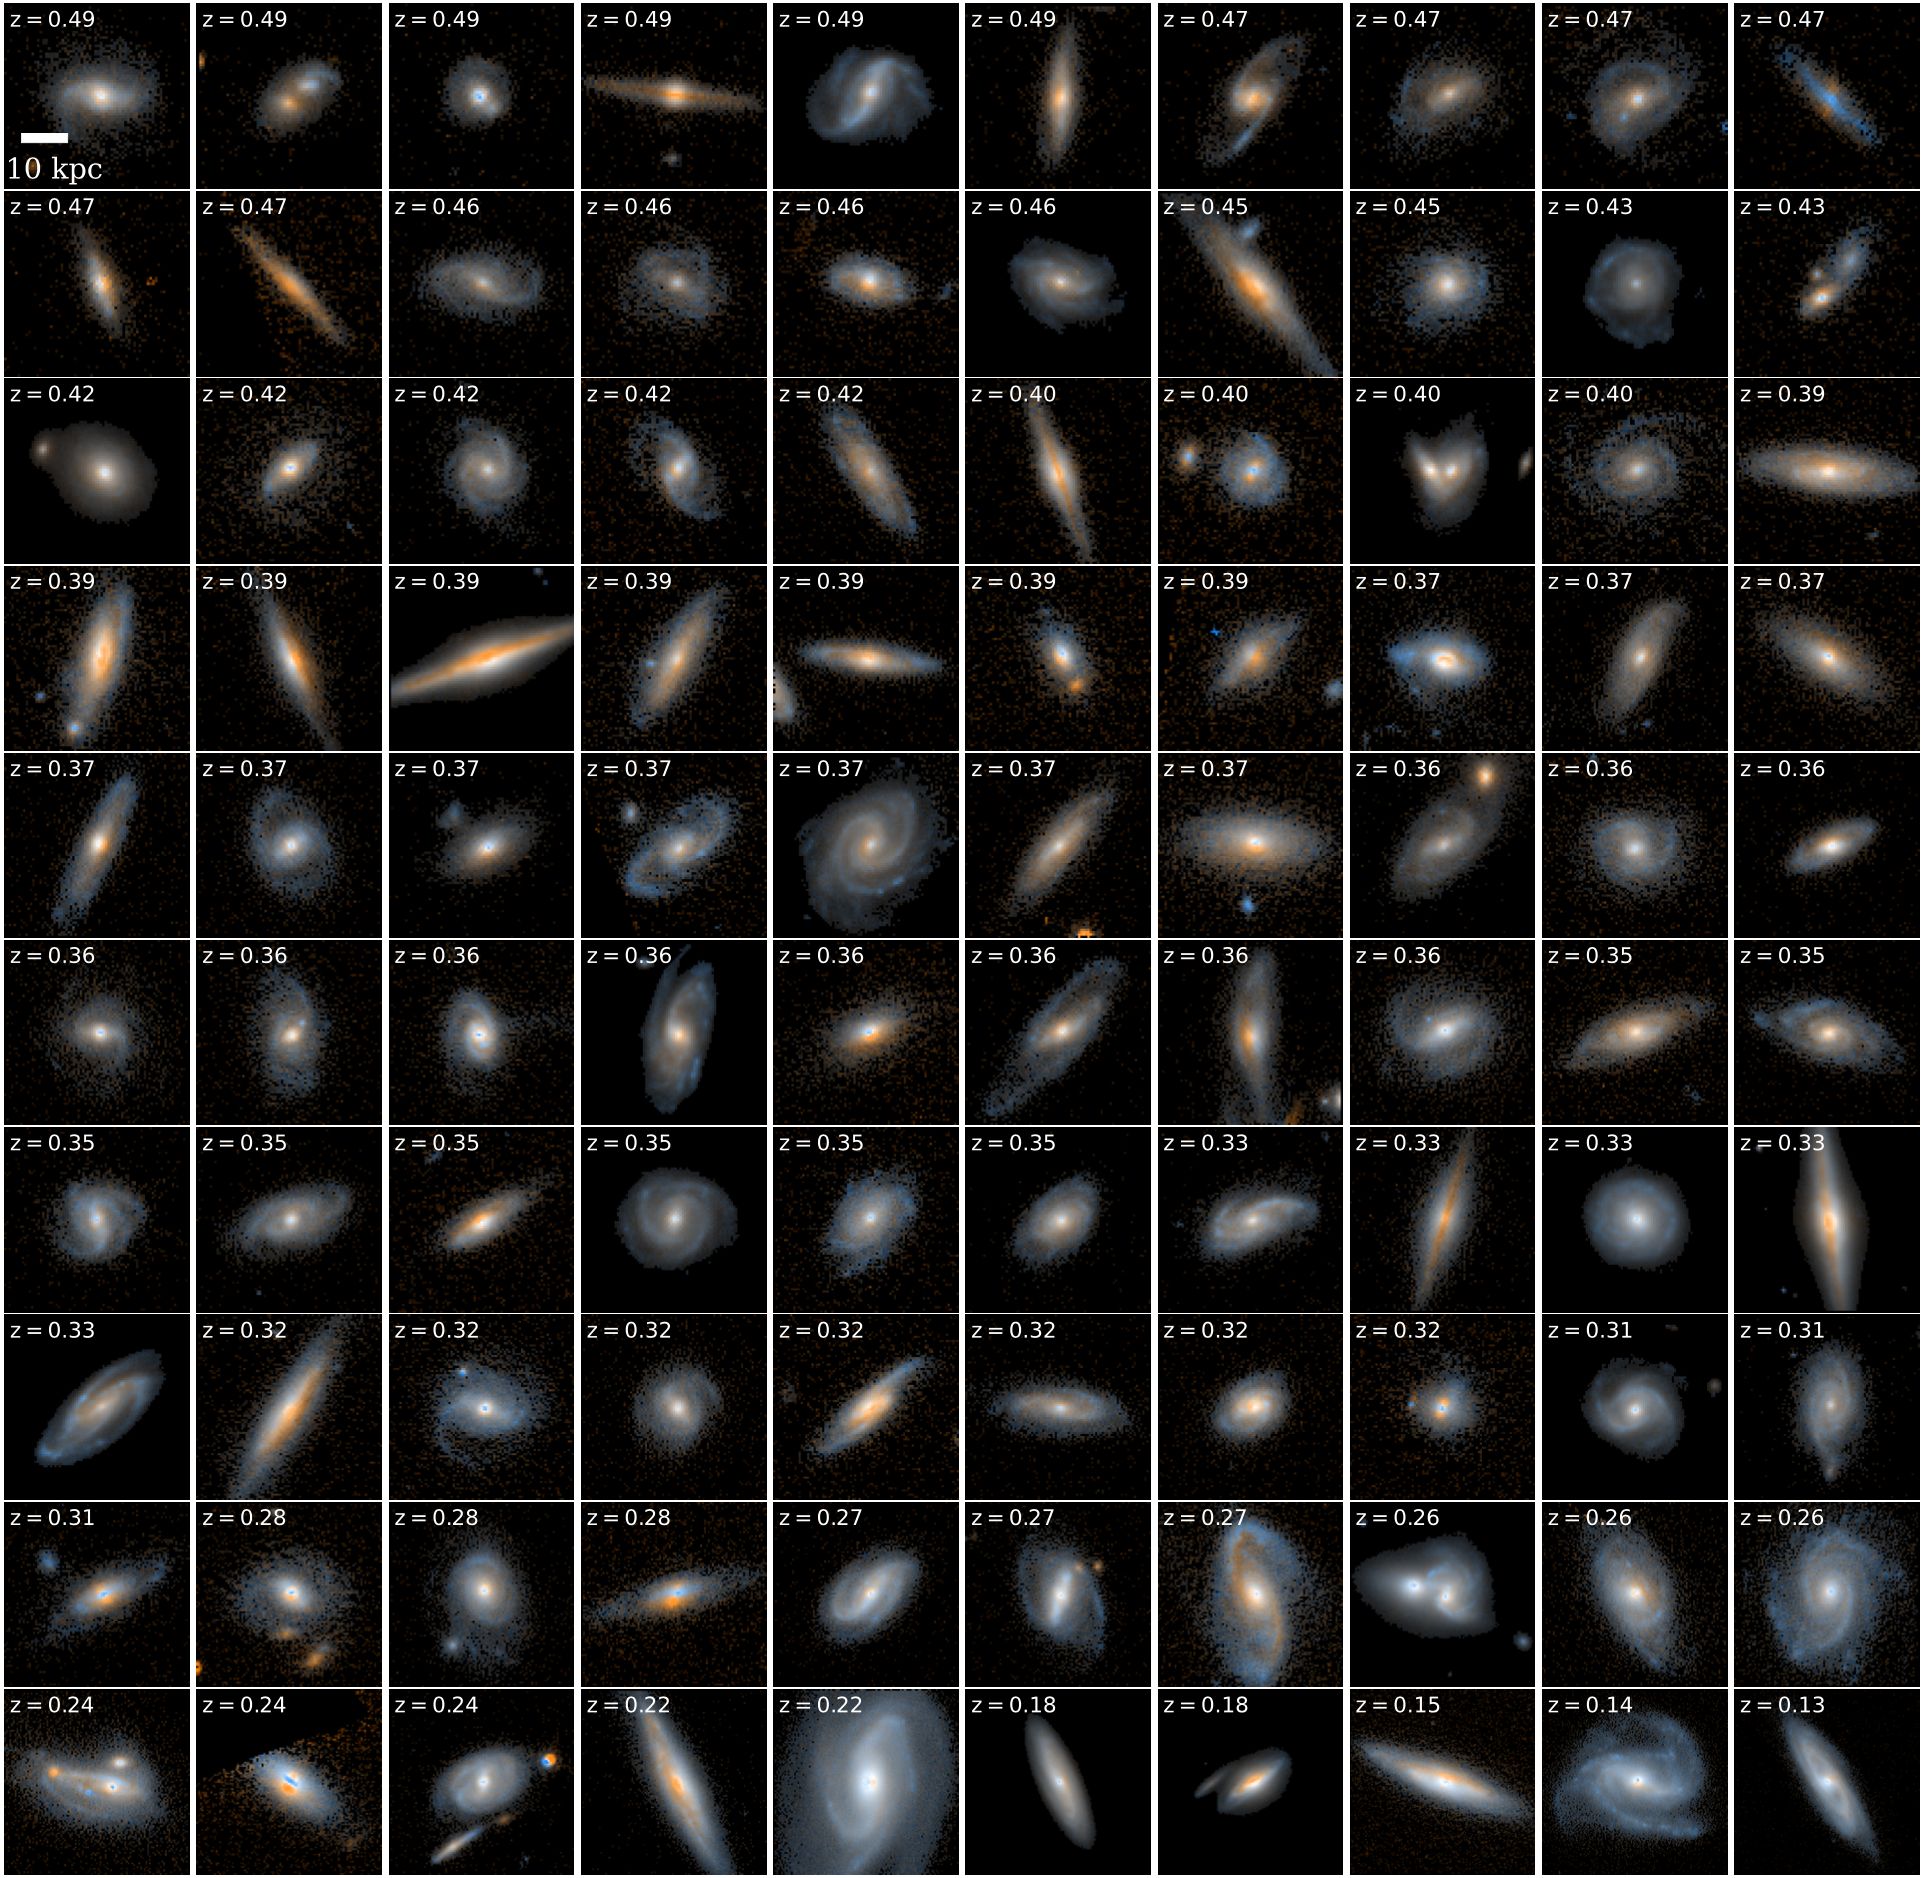 Изображения Галактик. Широкая область изображения в сочетании с гризмовой спектроскопией дает обзор морфологии областей звездообразования редких массивных галактик со звездообразованием за последние 5 миллиардов лет. На этих марках показаны самые массивные звездообразующие галактики в поле 3D-DASH с высокой скоростью звездообразования и малым красным смещением из каталога UVISTA. Галактики отсортированы по их красному смещению, которое показано в верхнем левом углу. Каждый штамп имеет размер 40 x 40 kpc и создается только с использованием изображений WFC3/F160W и ACS/F814W только для области DASH.